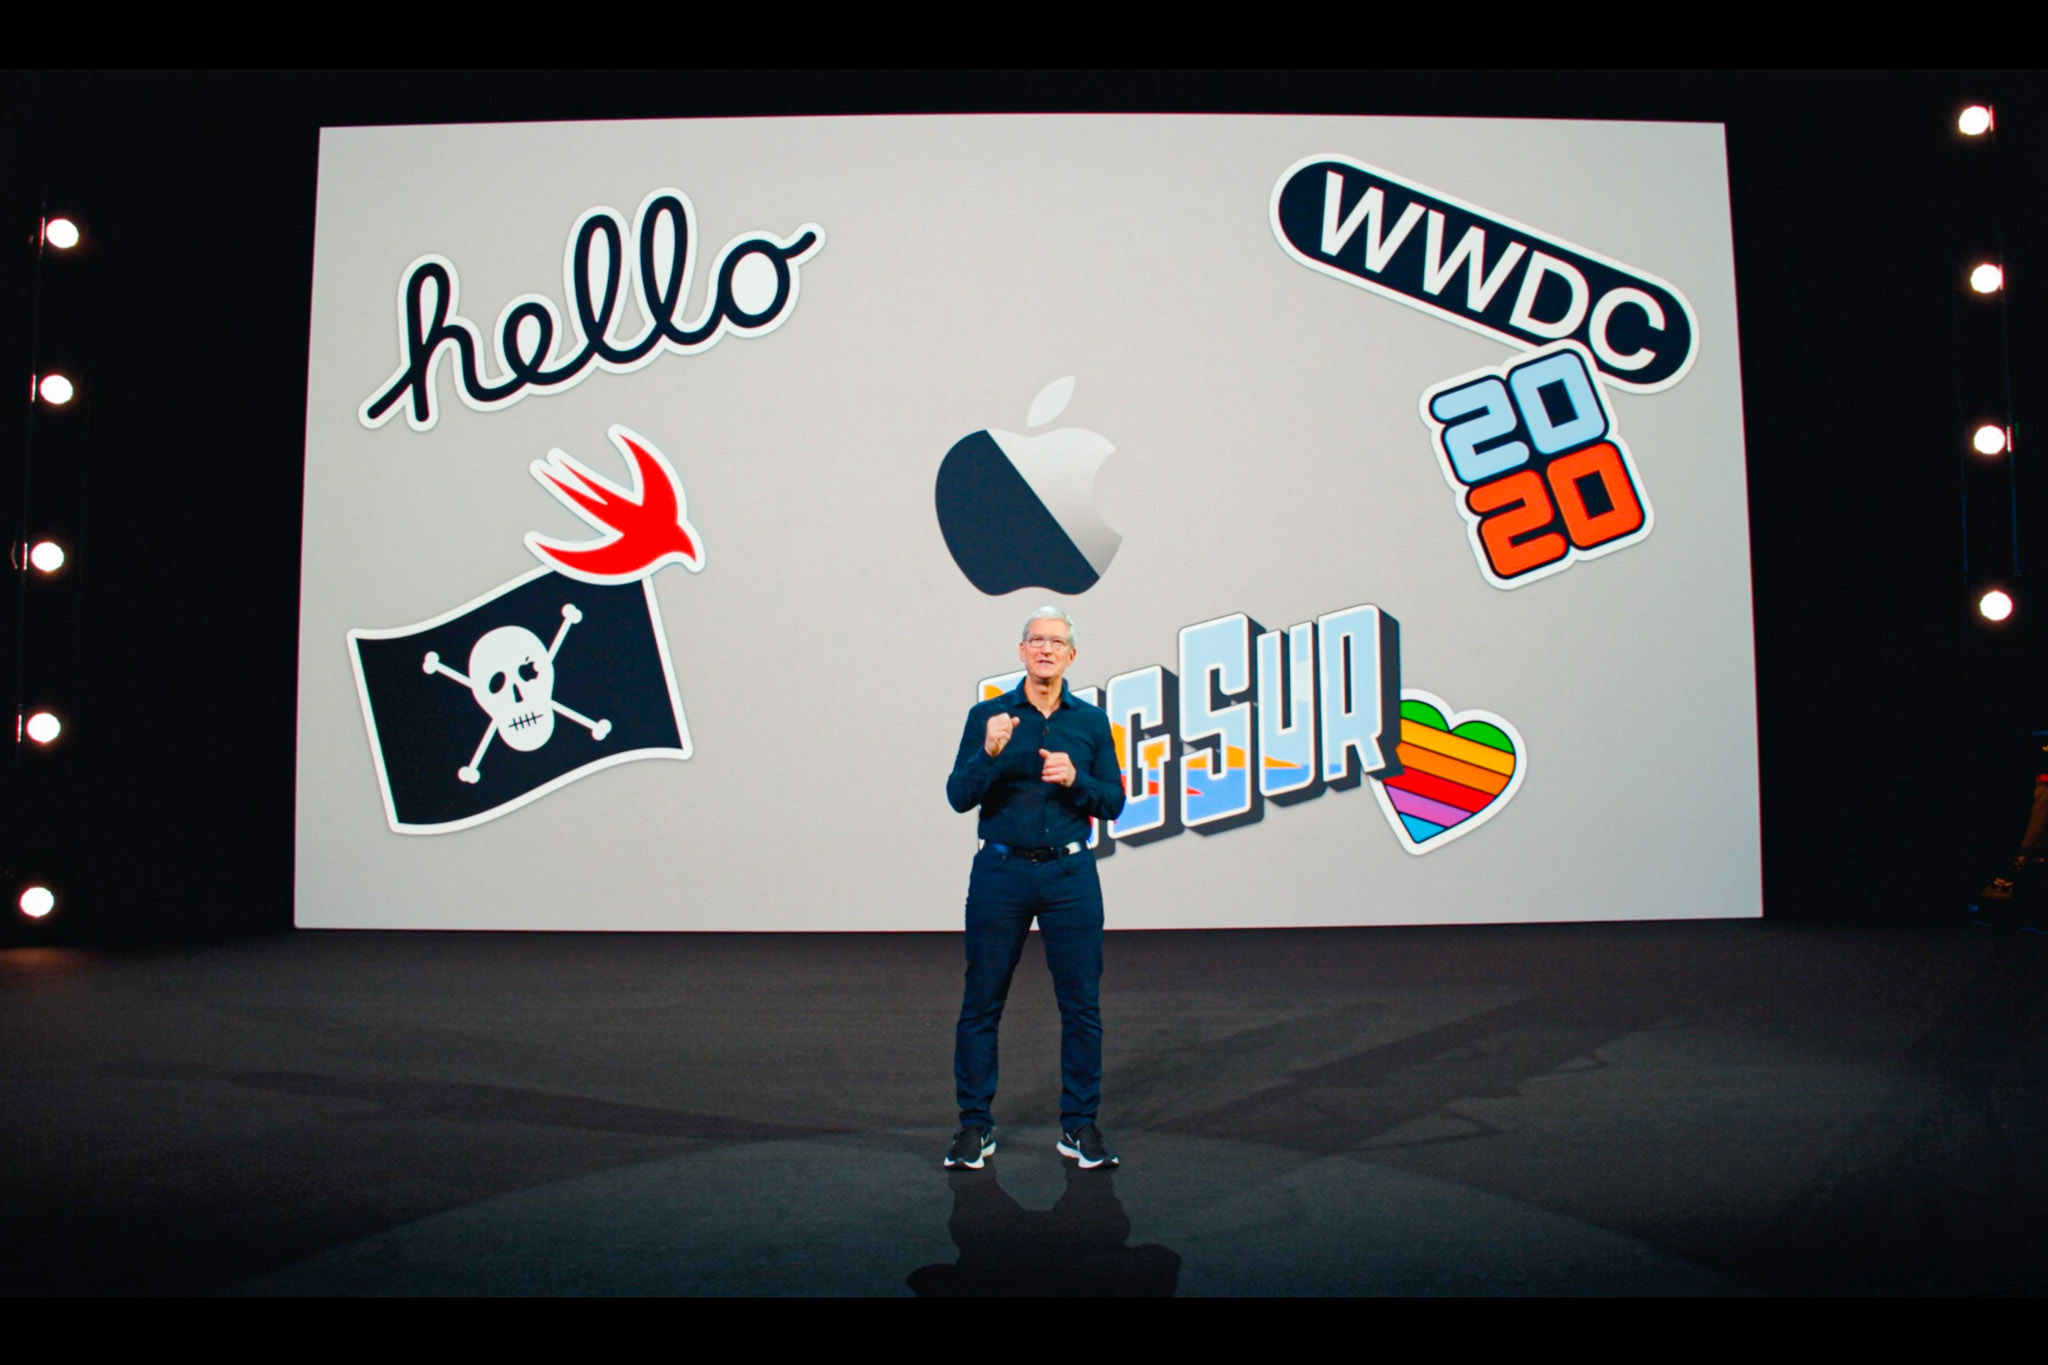 Tổng hợp sự kiện Apple WWDC20 qua những con số